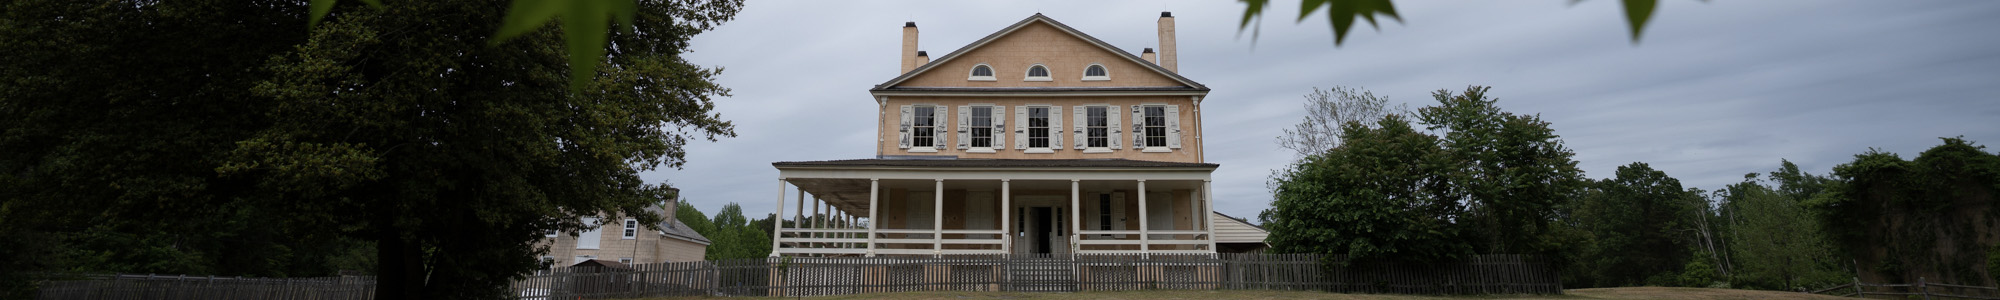 Atsion Mansion Historic Site